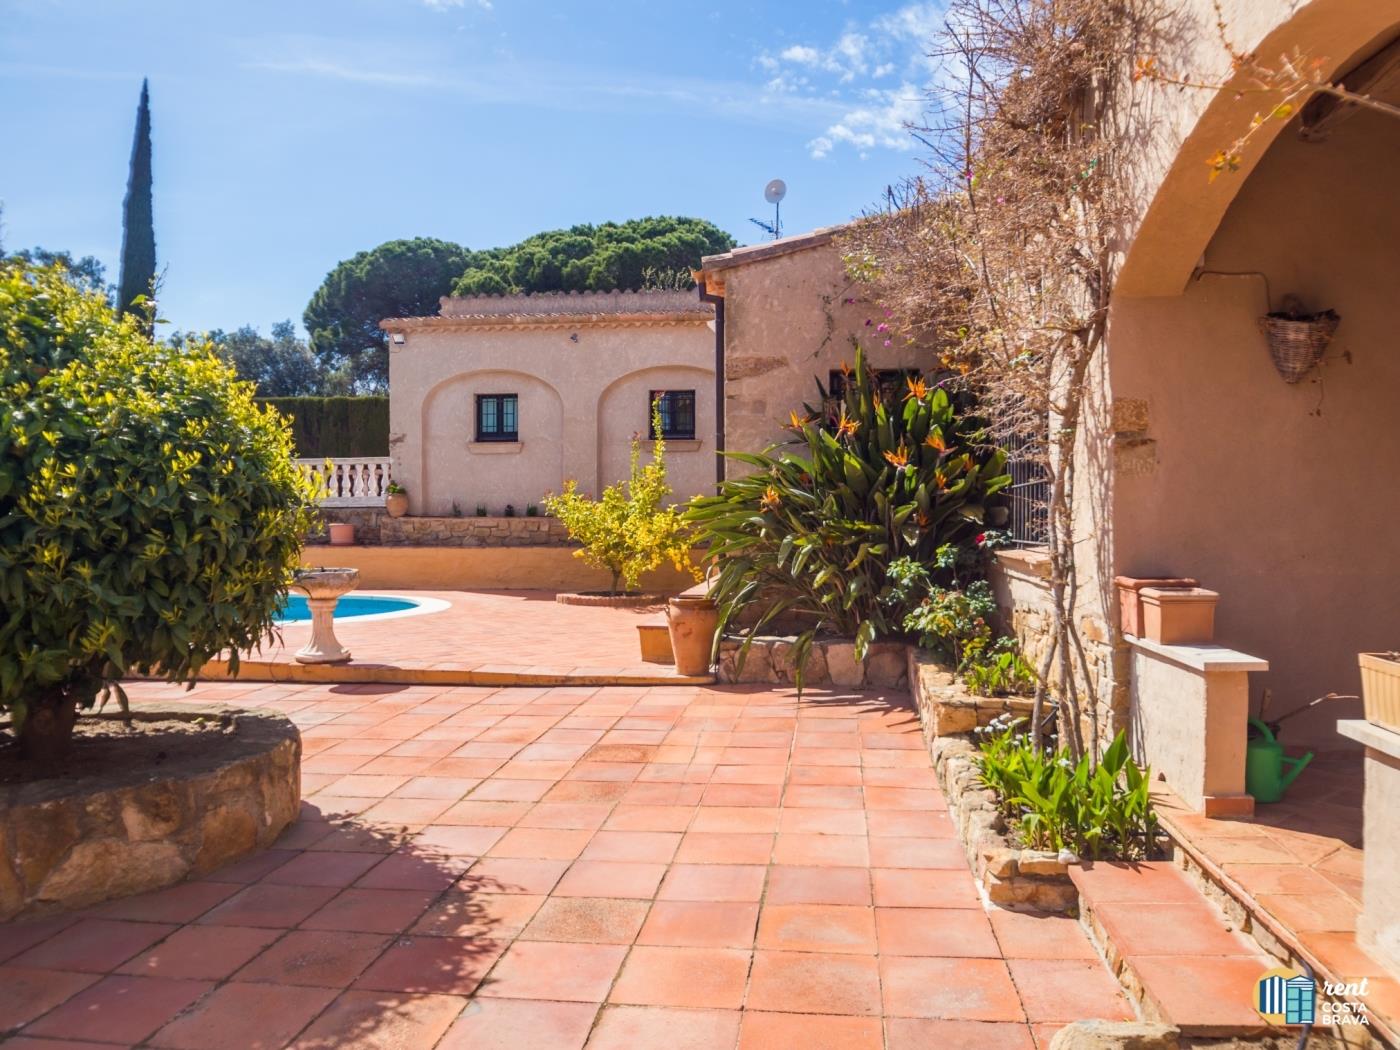 Villa Violeta espaiosa casa de poble amb piscina a Castell-Platja d'Aro